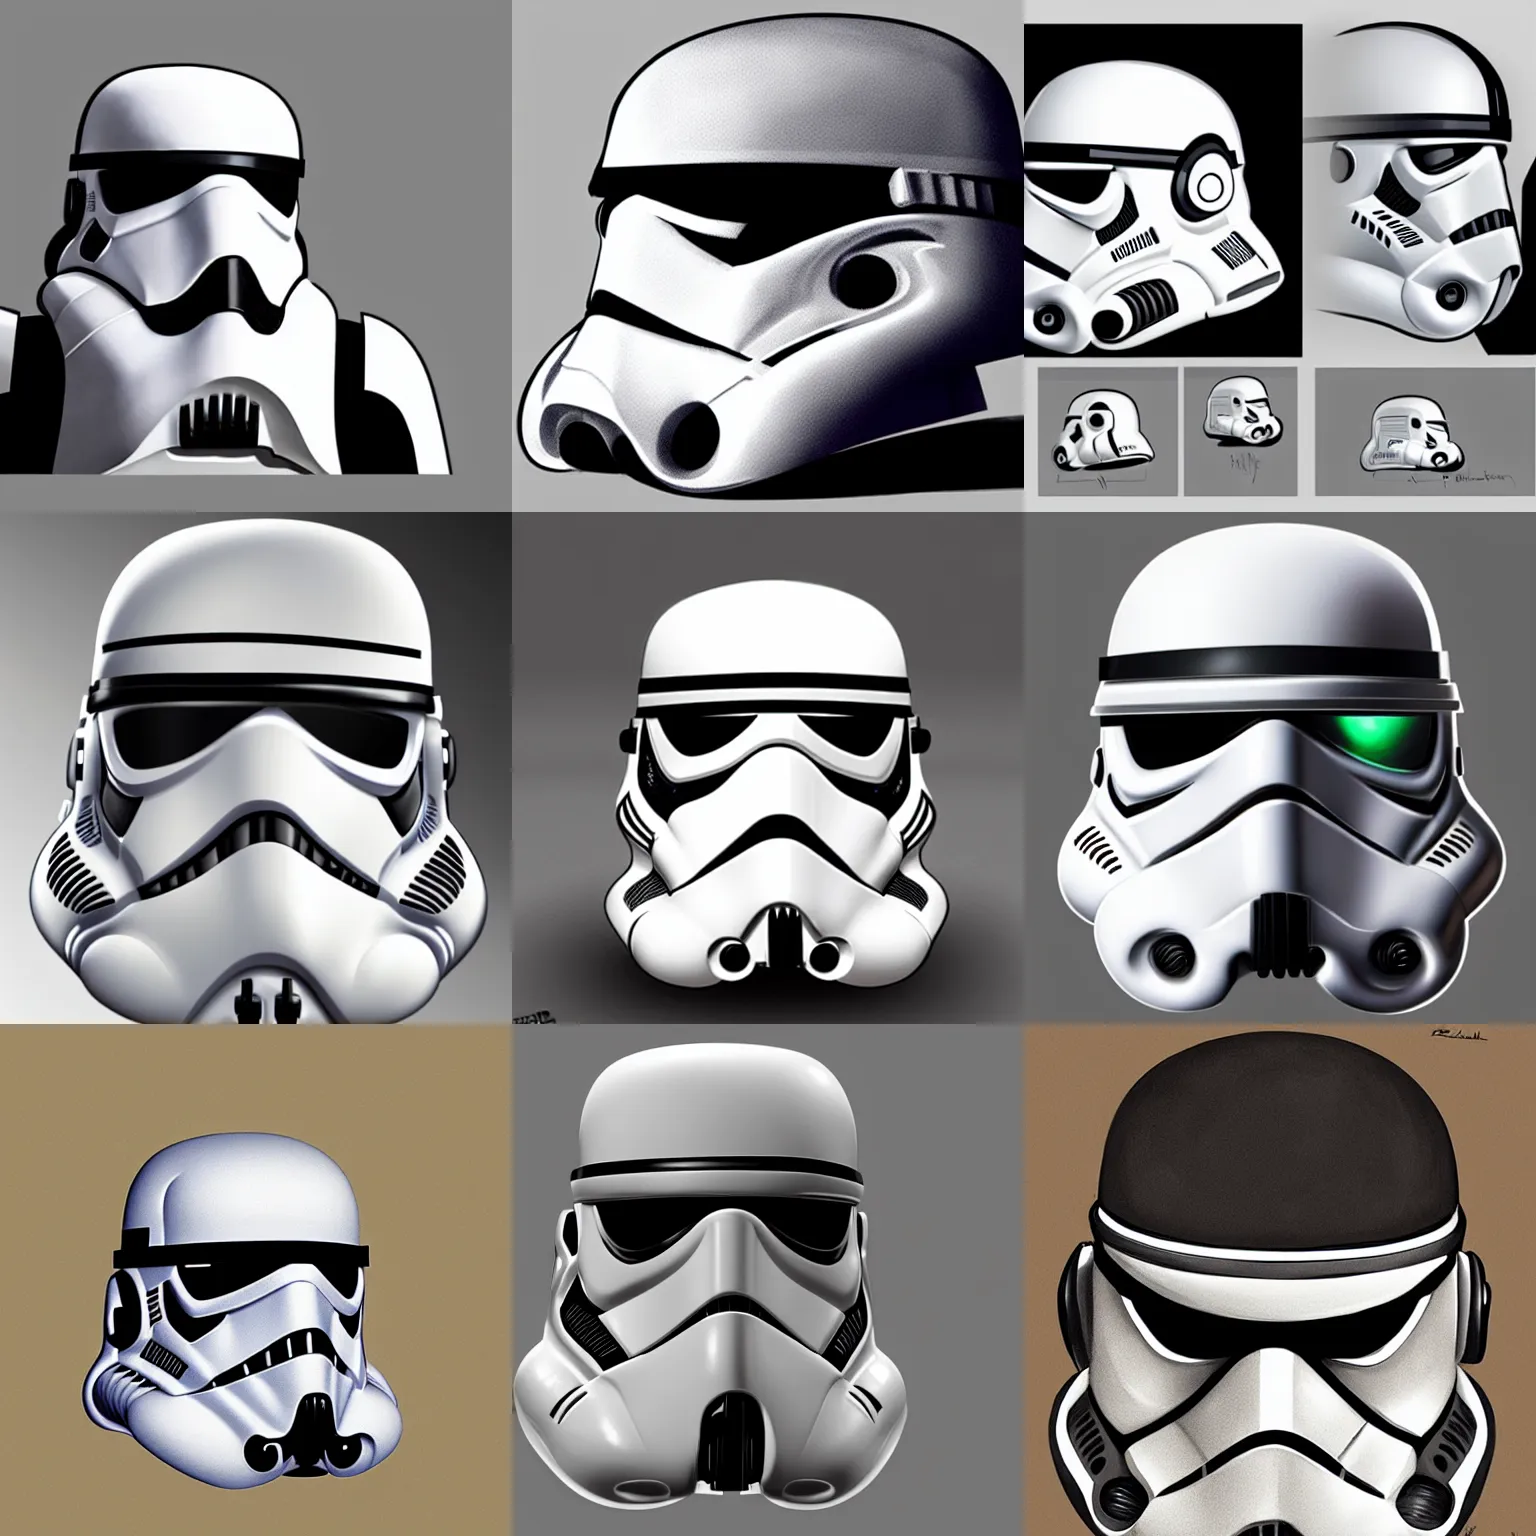 Prompt: Storm Trooper helmet concept art by Pascal Blanché